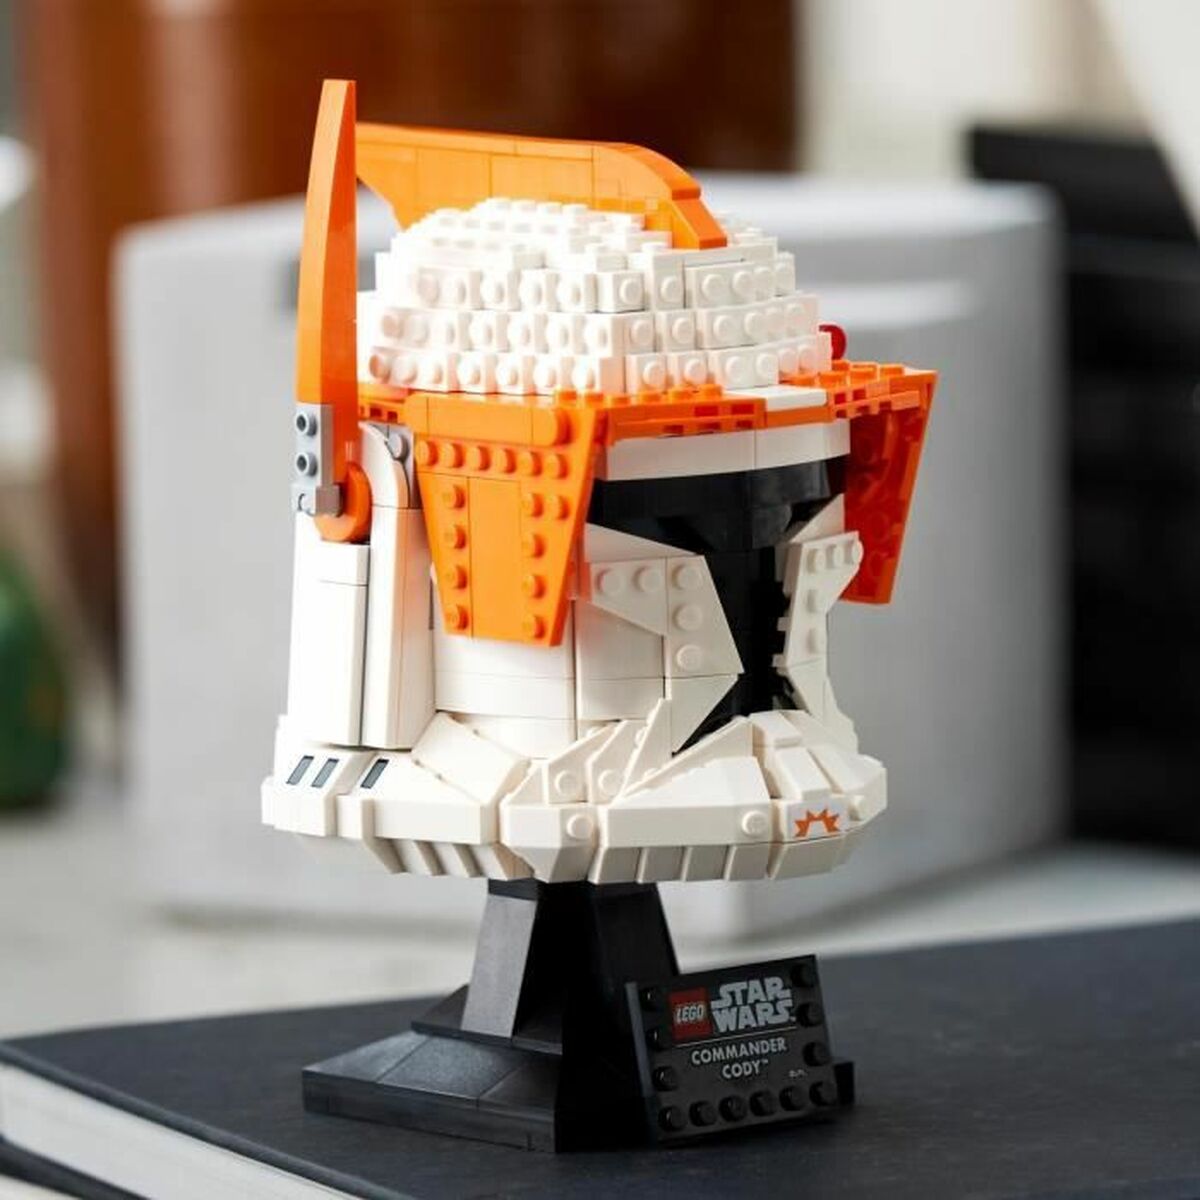 Bouwspel Lego Clone Commander Cody 766 Onderdelen